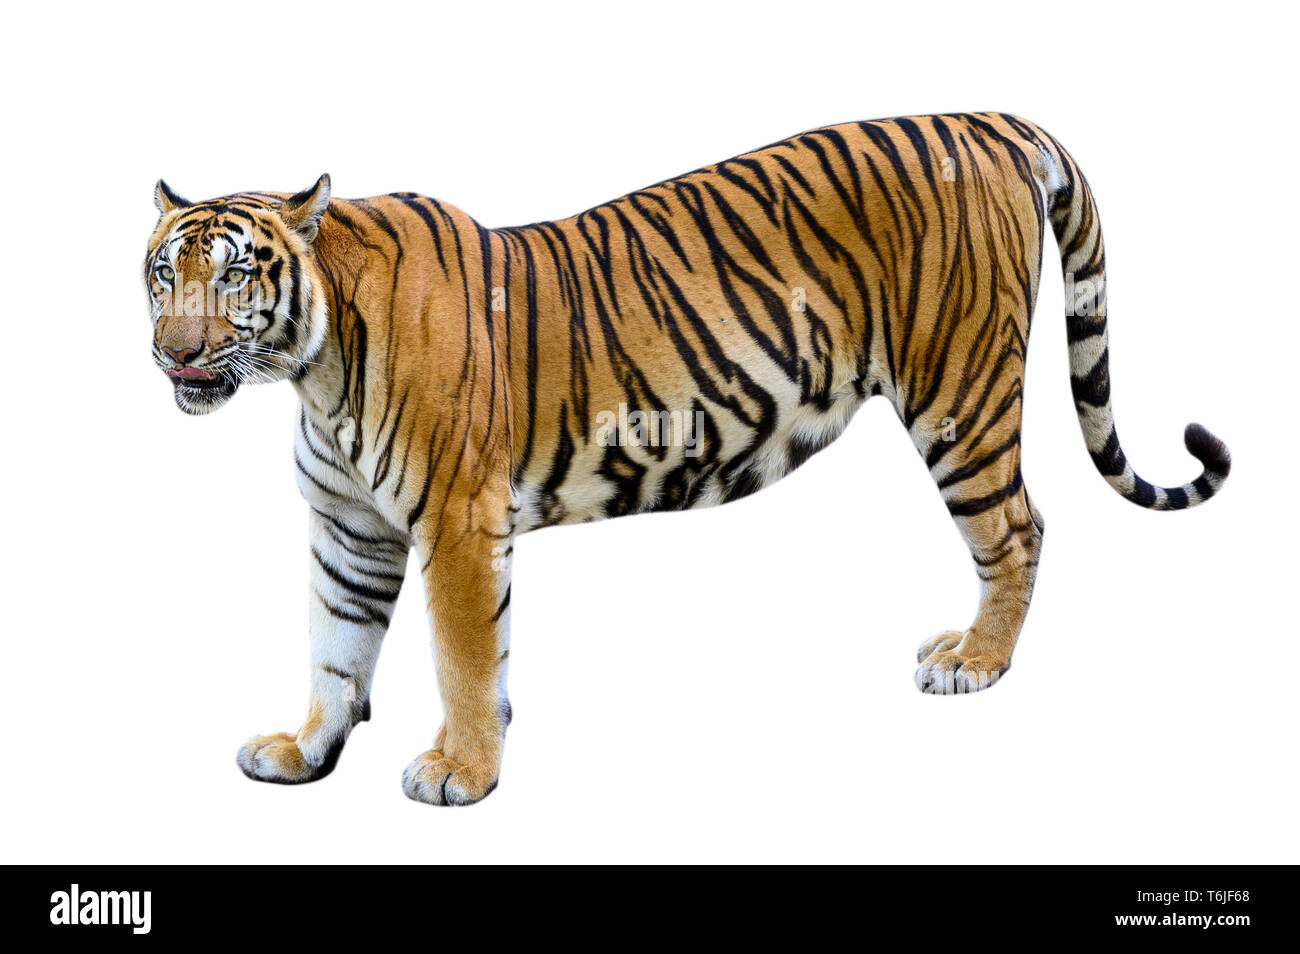 Fond blanc tigre isoler un corps entier Banque D'Images